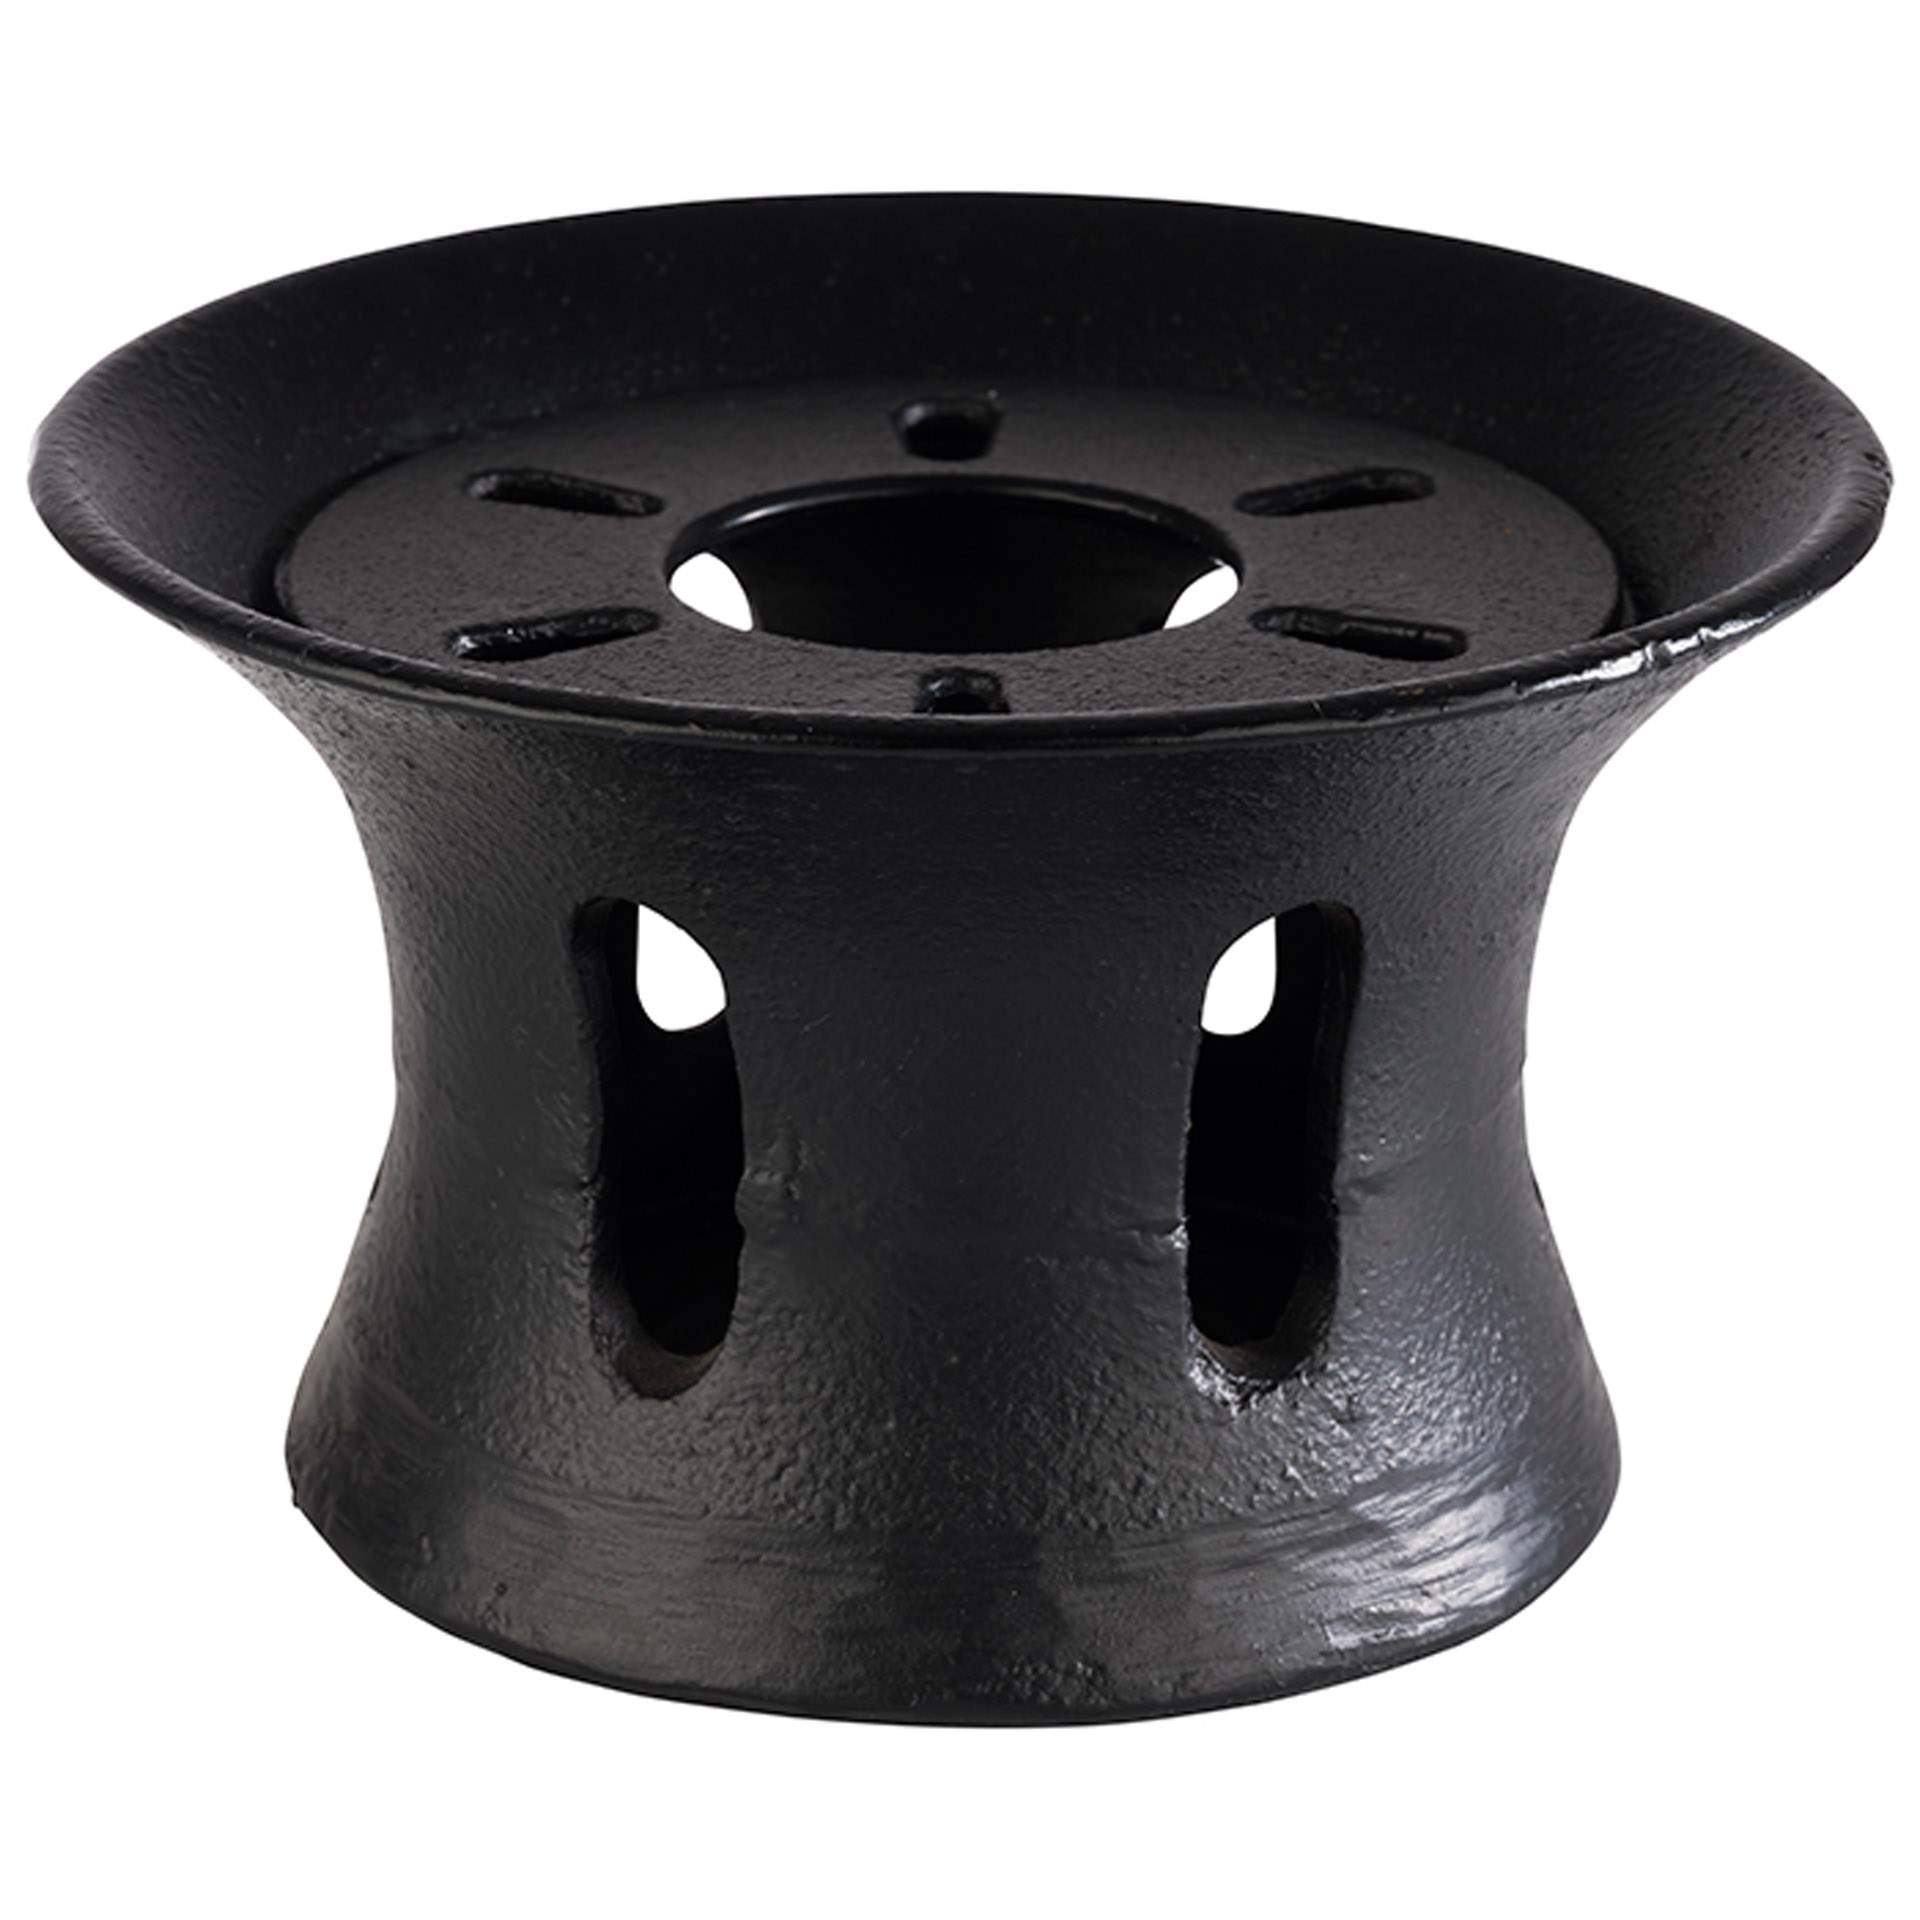 Stövchen - mit abnehmbarem Deckel - Serie Asia - schwarz - Höhe 7,5 cm - Ø 13,0 cm - Gusseisen - 10994-B